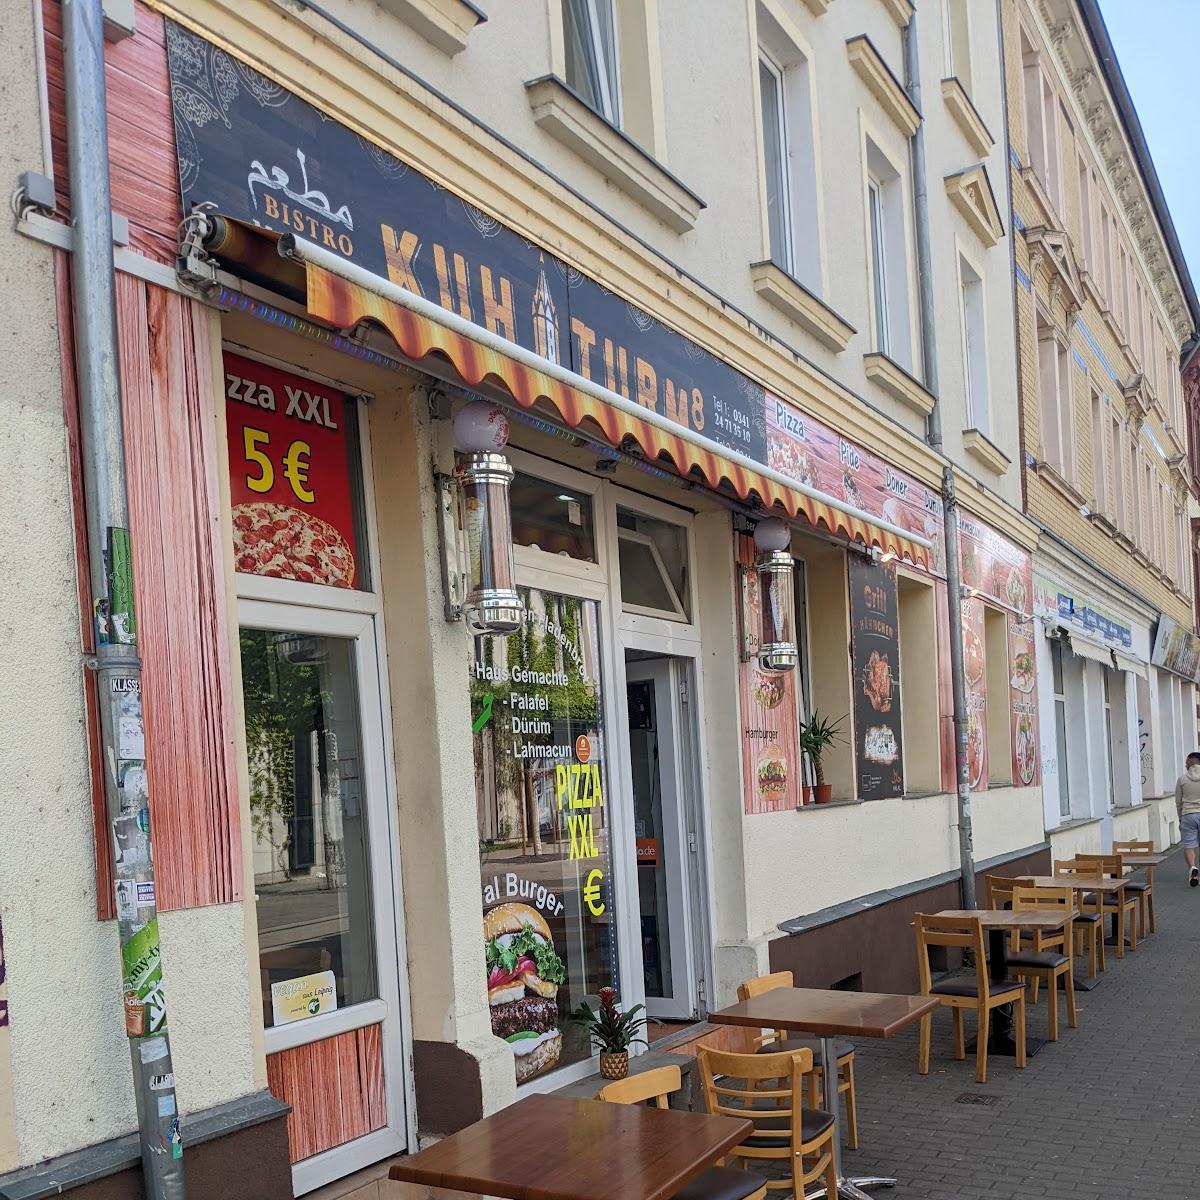 Restaurant "Bistro Kuhturm 8" in Leipzig